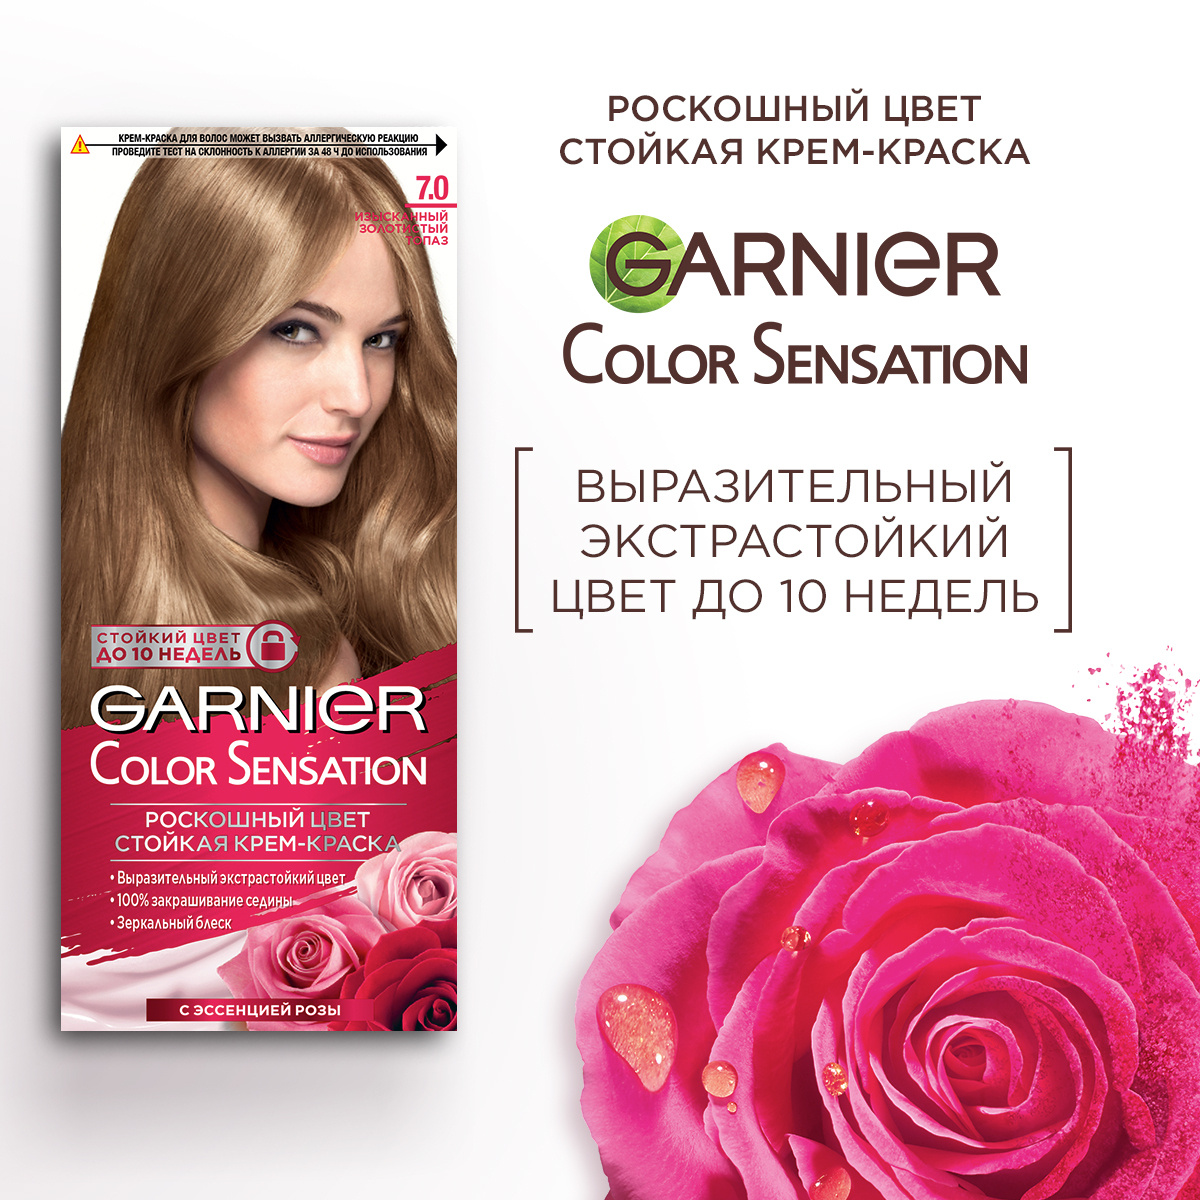 Garnier Крем краска для волос стойкая Color Sensational Роскошь цвета, 7.0, Изысканный золотистый топаз, #1